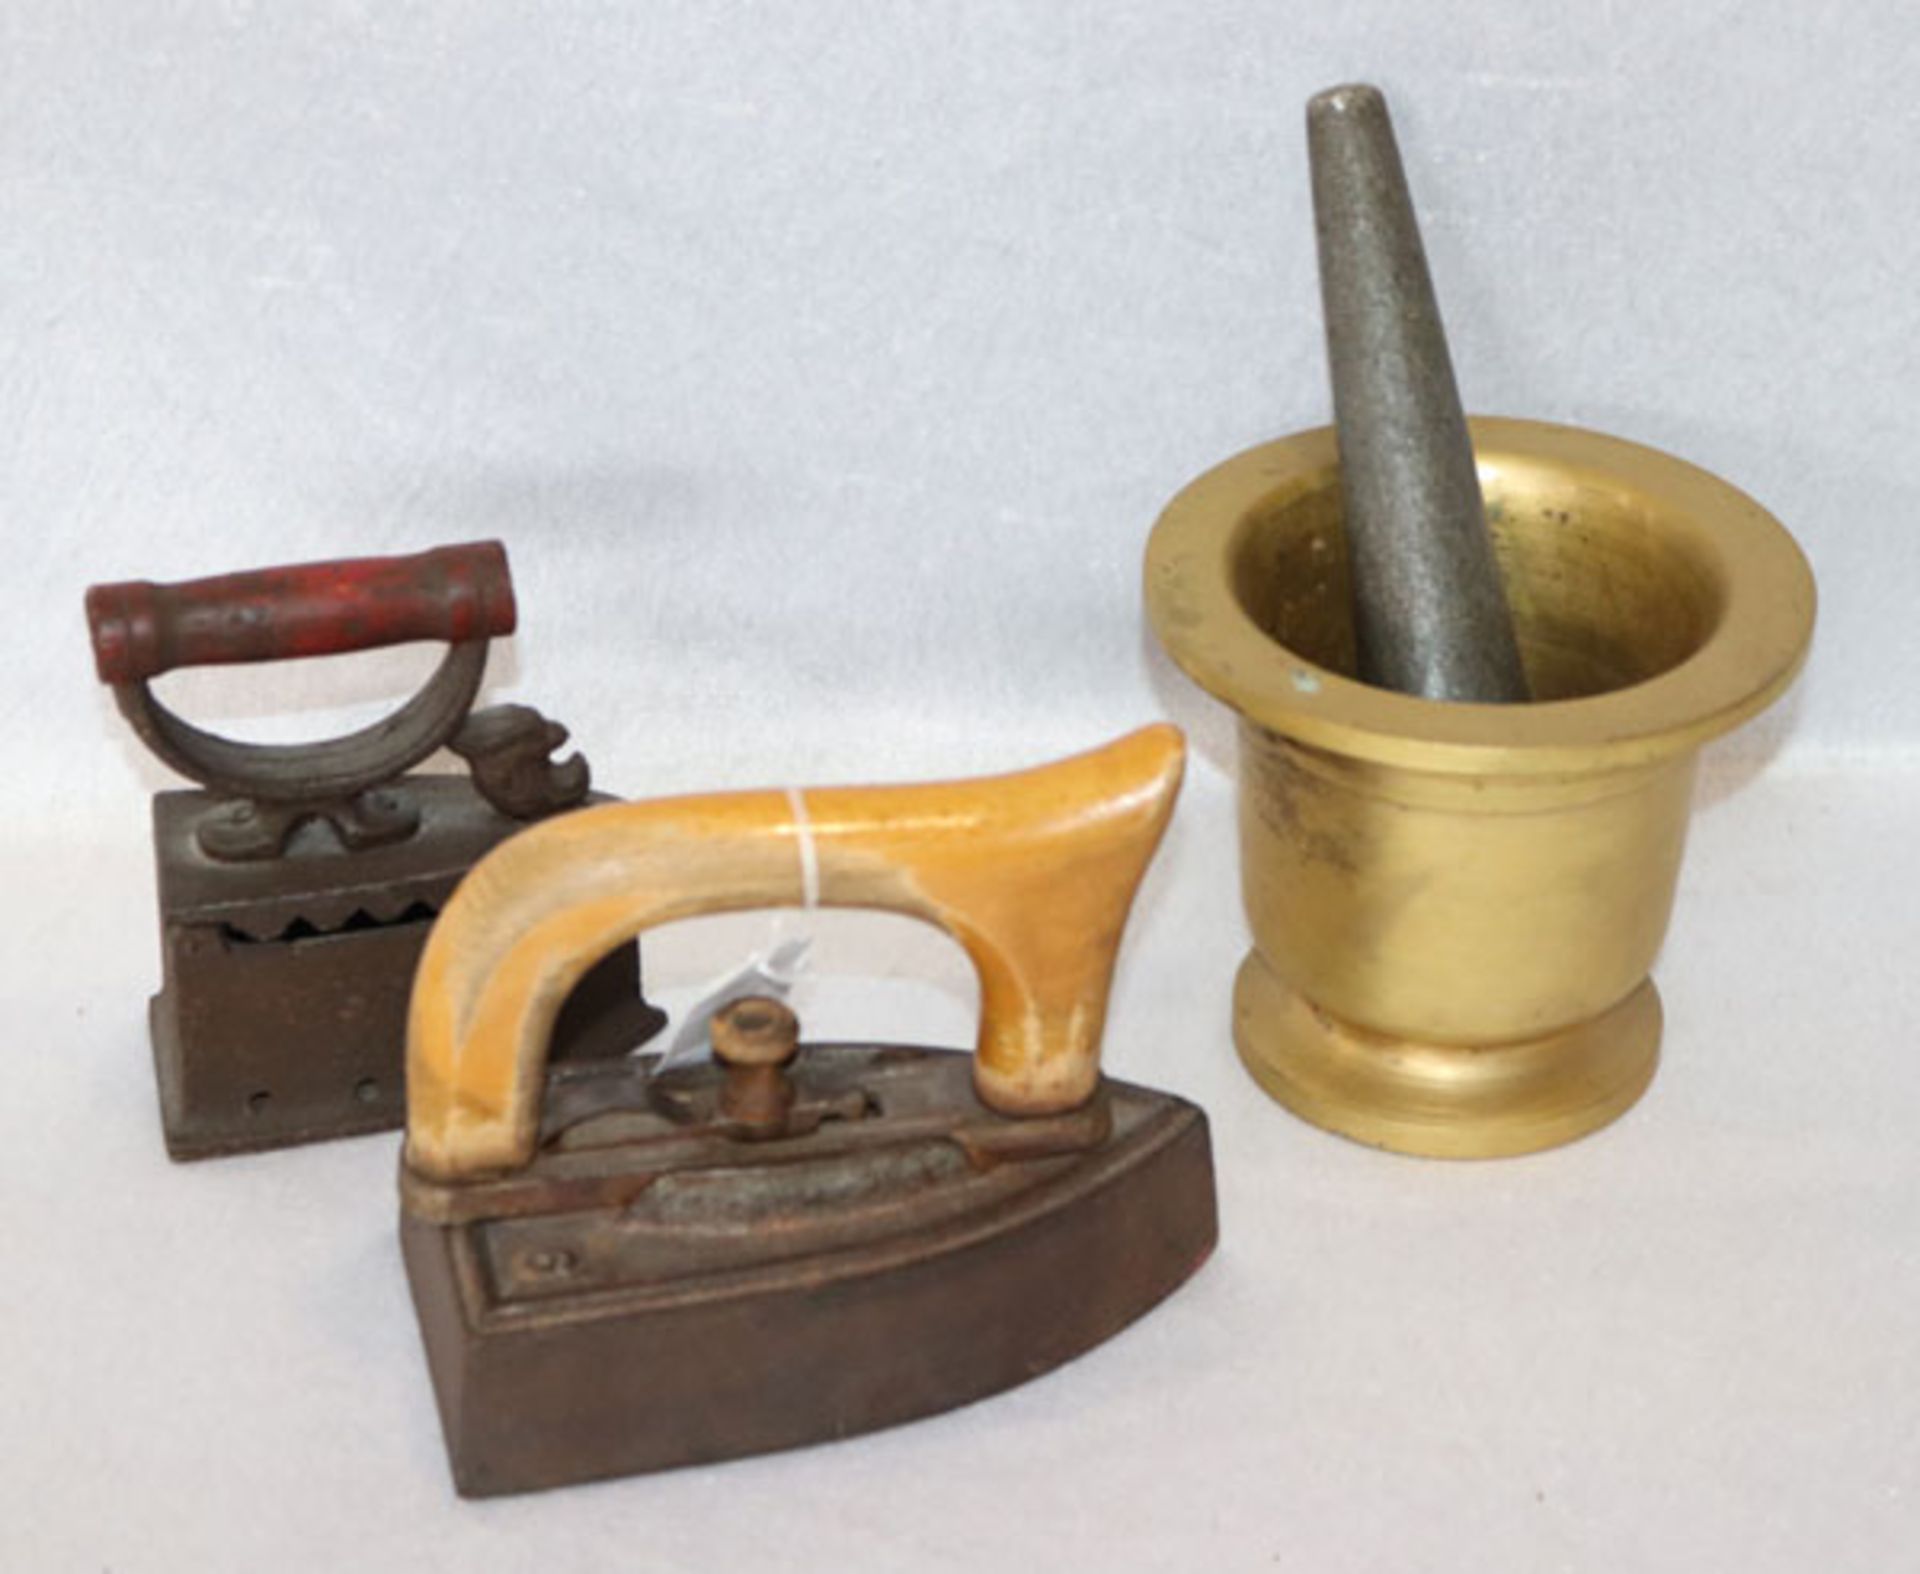 Konvolut: Metall Mörser mit Stößel, H 12 cm, D 14 cm, und 2 antike Bügeleisen mit Holzgriffen, H 12/